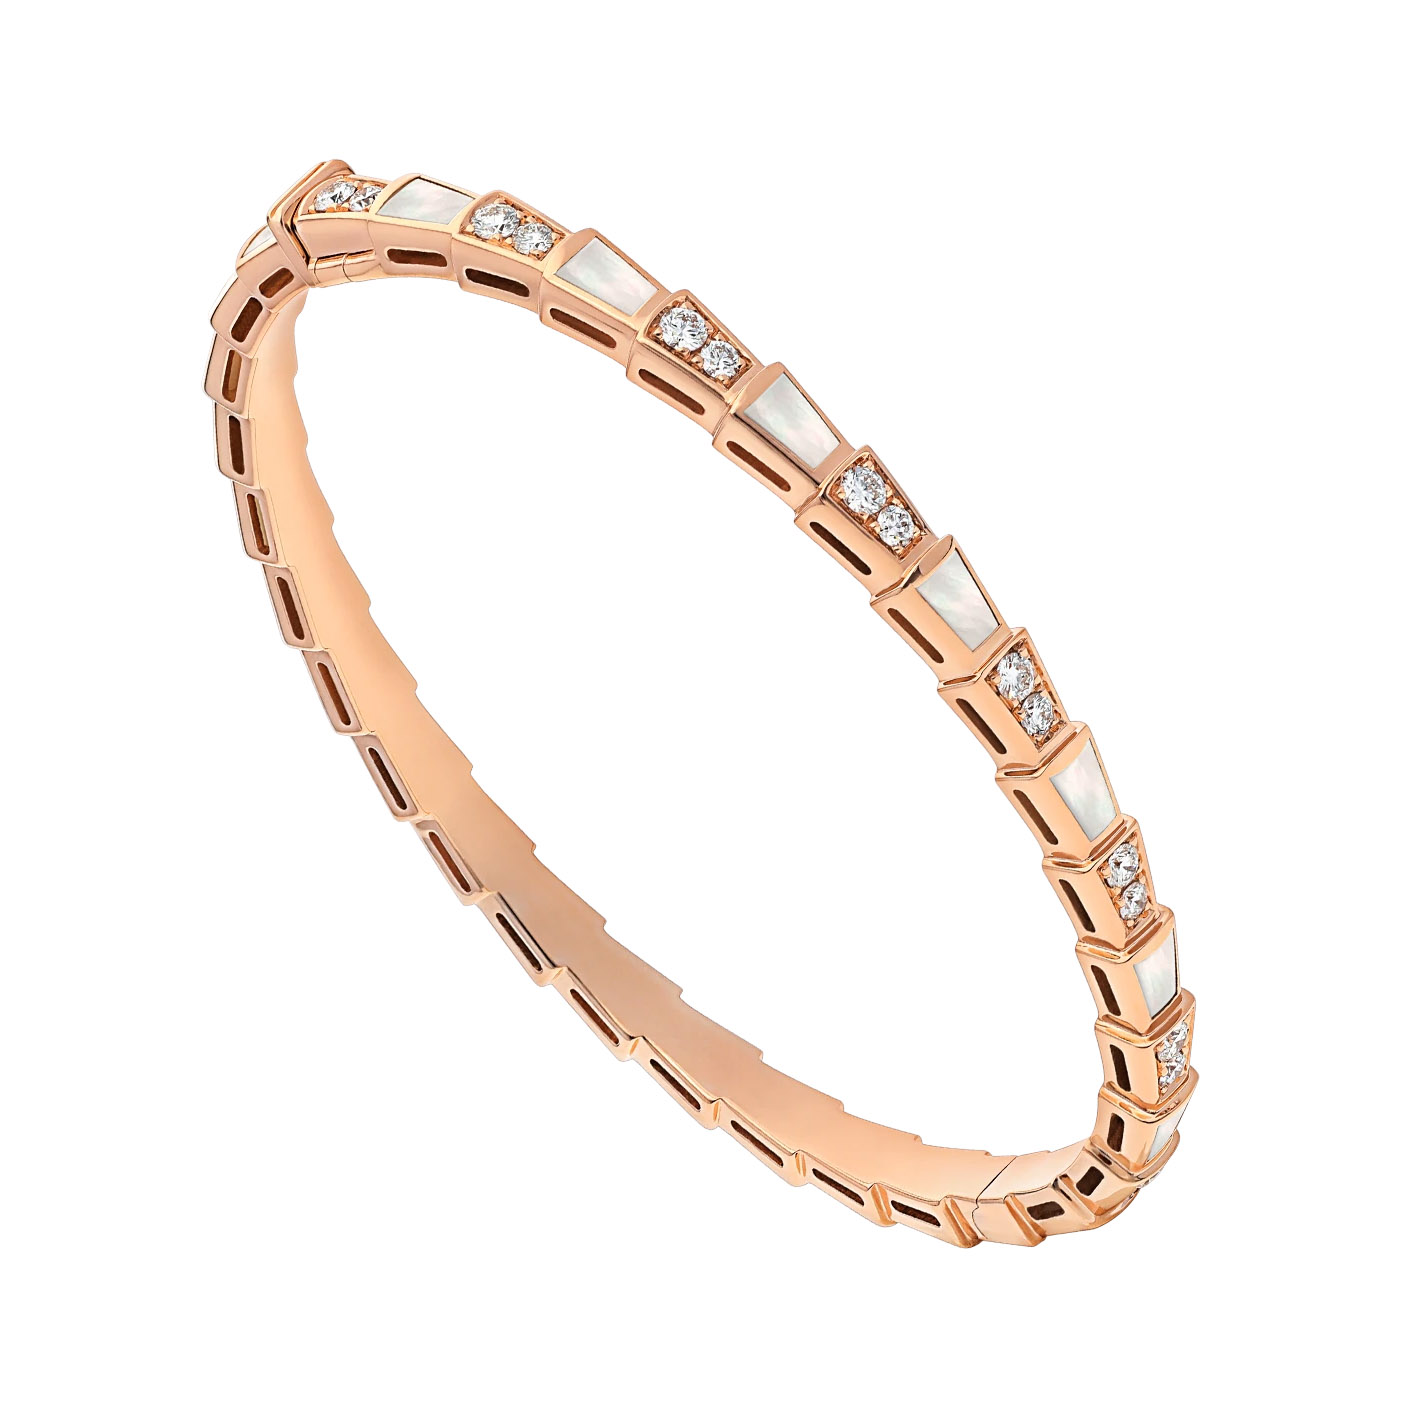 Groothandel OEM / ODM Juweliersware Pasgemaakte ontwerp 18K roosgoud armband stel met pêrelmoer elemente en pavé diamante OEM Juweliersfabriek